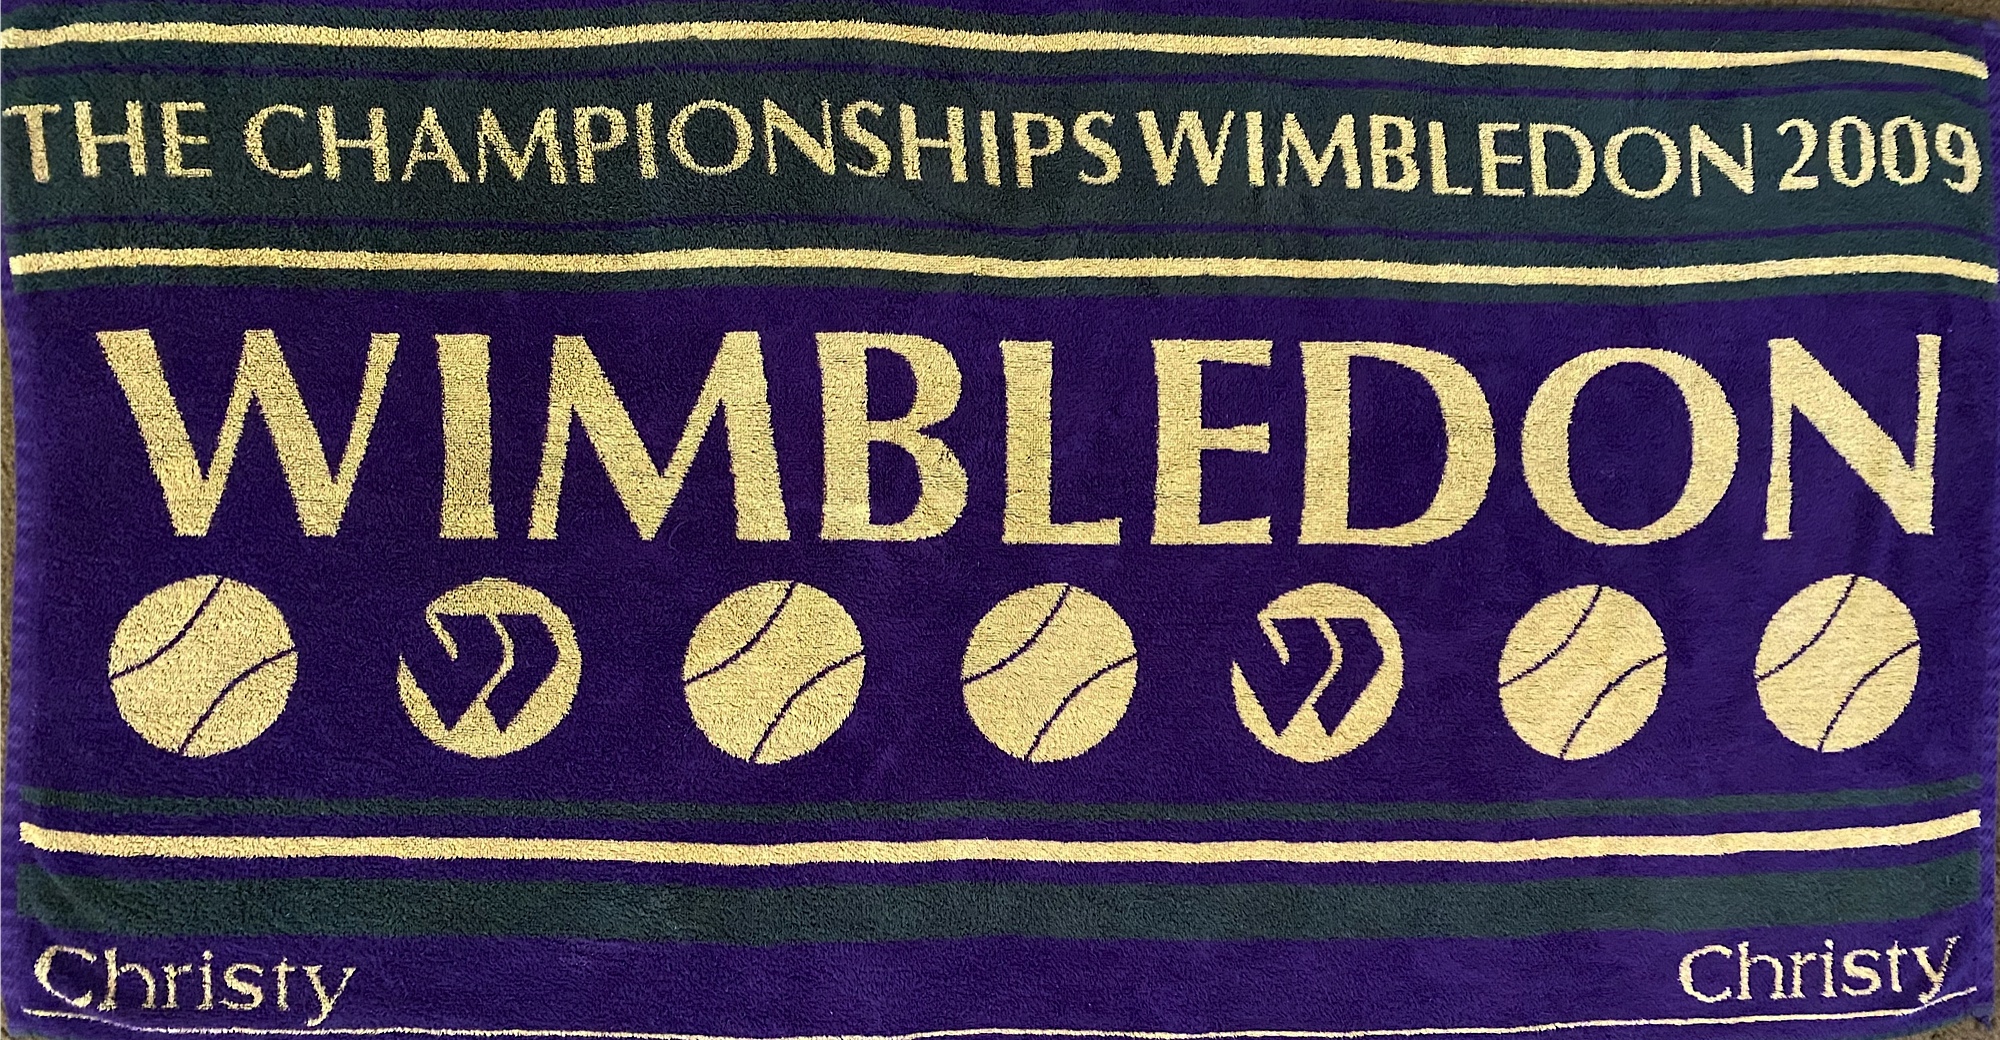 https://blog.tennisexpress.com/wp-content/uploads/2020/03/Wimbledon-Towel.jpg